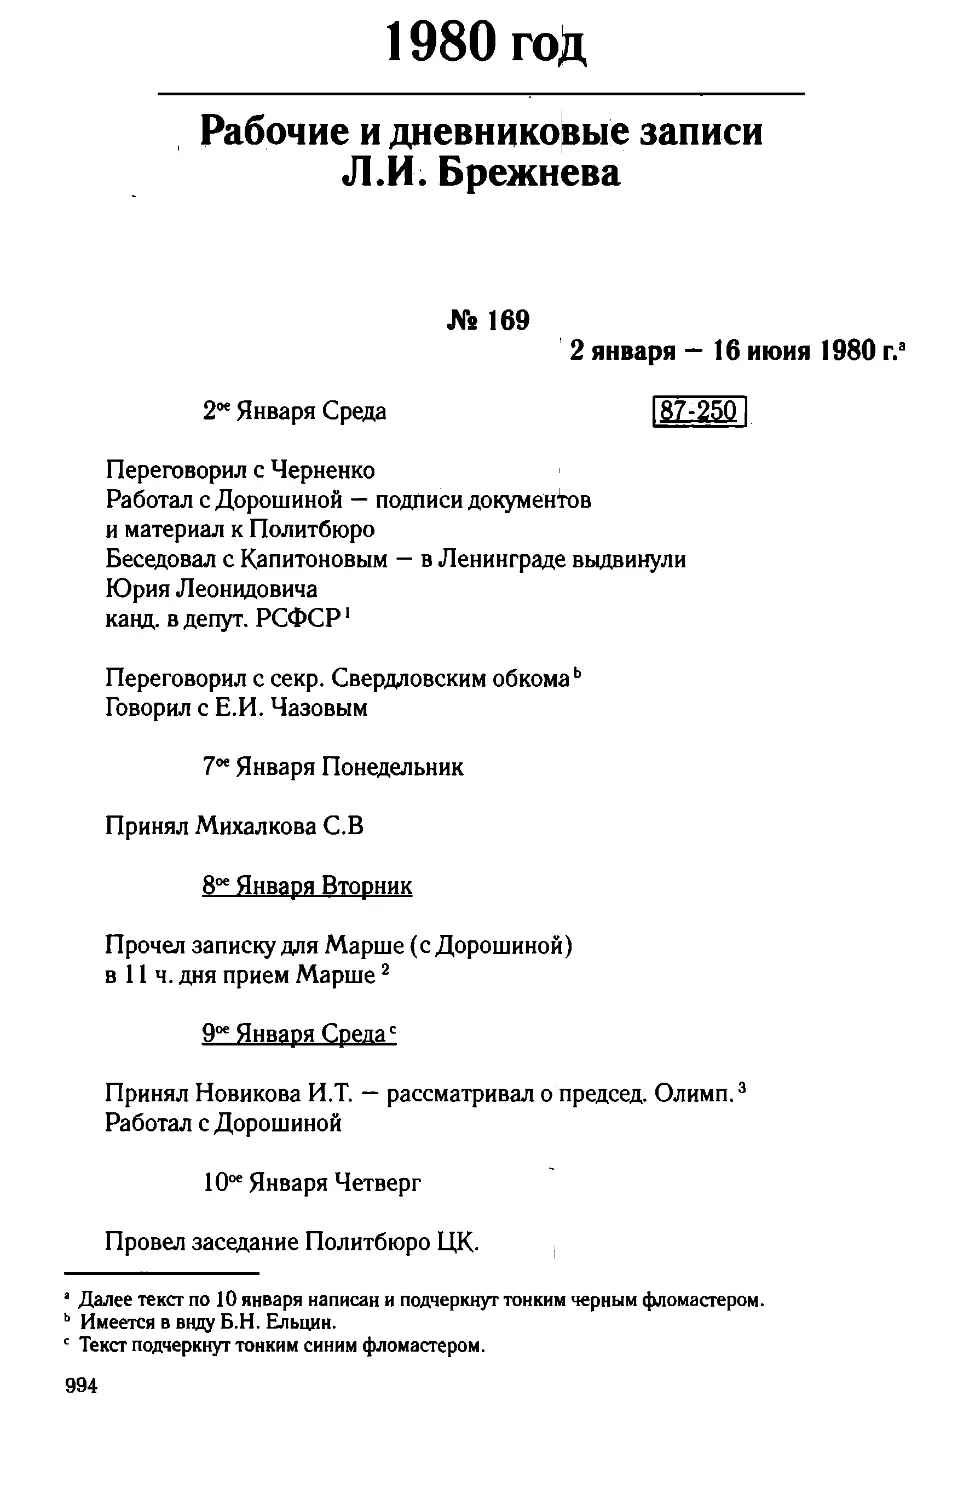 Рабочие и дневниковые записи Л.И. Брежнева. 1980 год